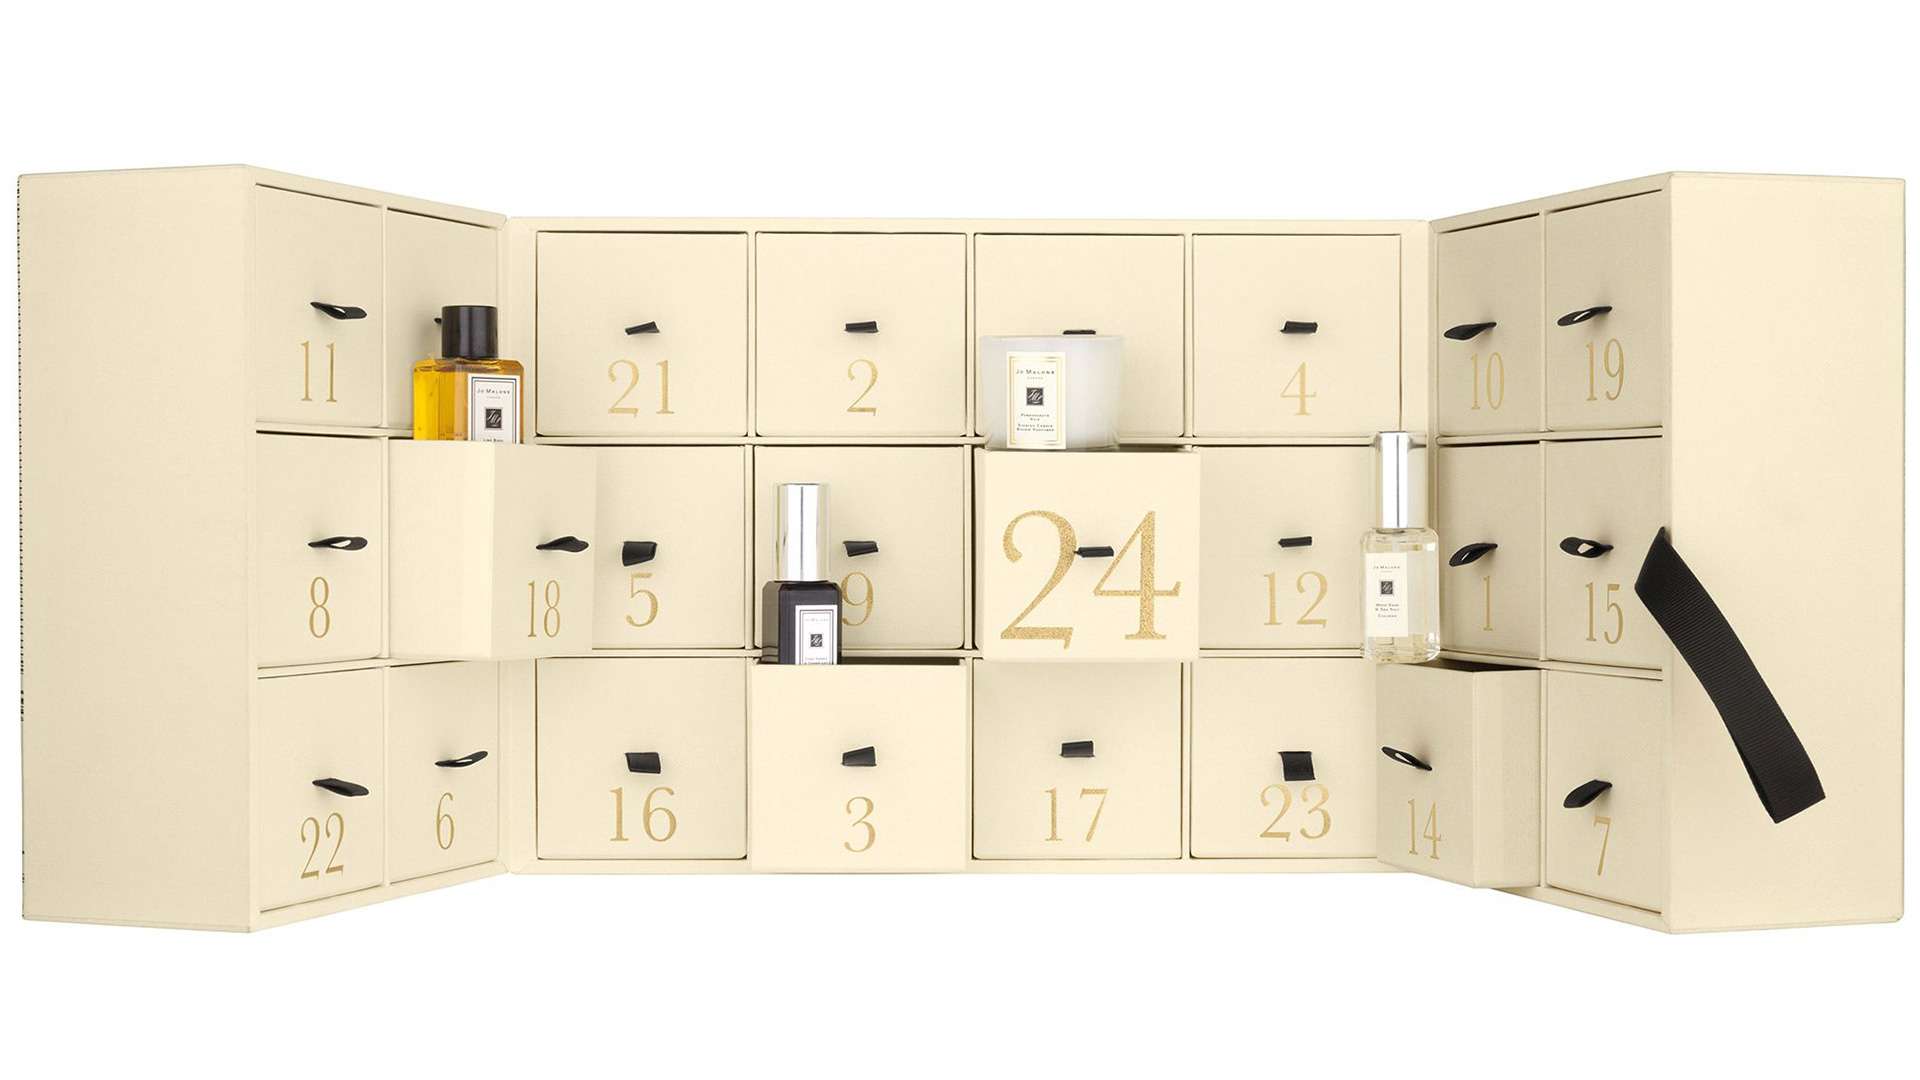 Für vorweihnachtliche Freuden sorgt Jo Malone mit einem Kalender voll Duschgels, Parfums und Kerzen. Abgesehen vom exklusiven Inhalt begeistert auch das Design des Produkts. jomalone.eu​​​​​​​